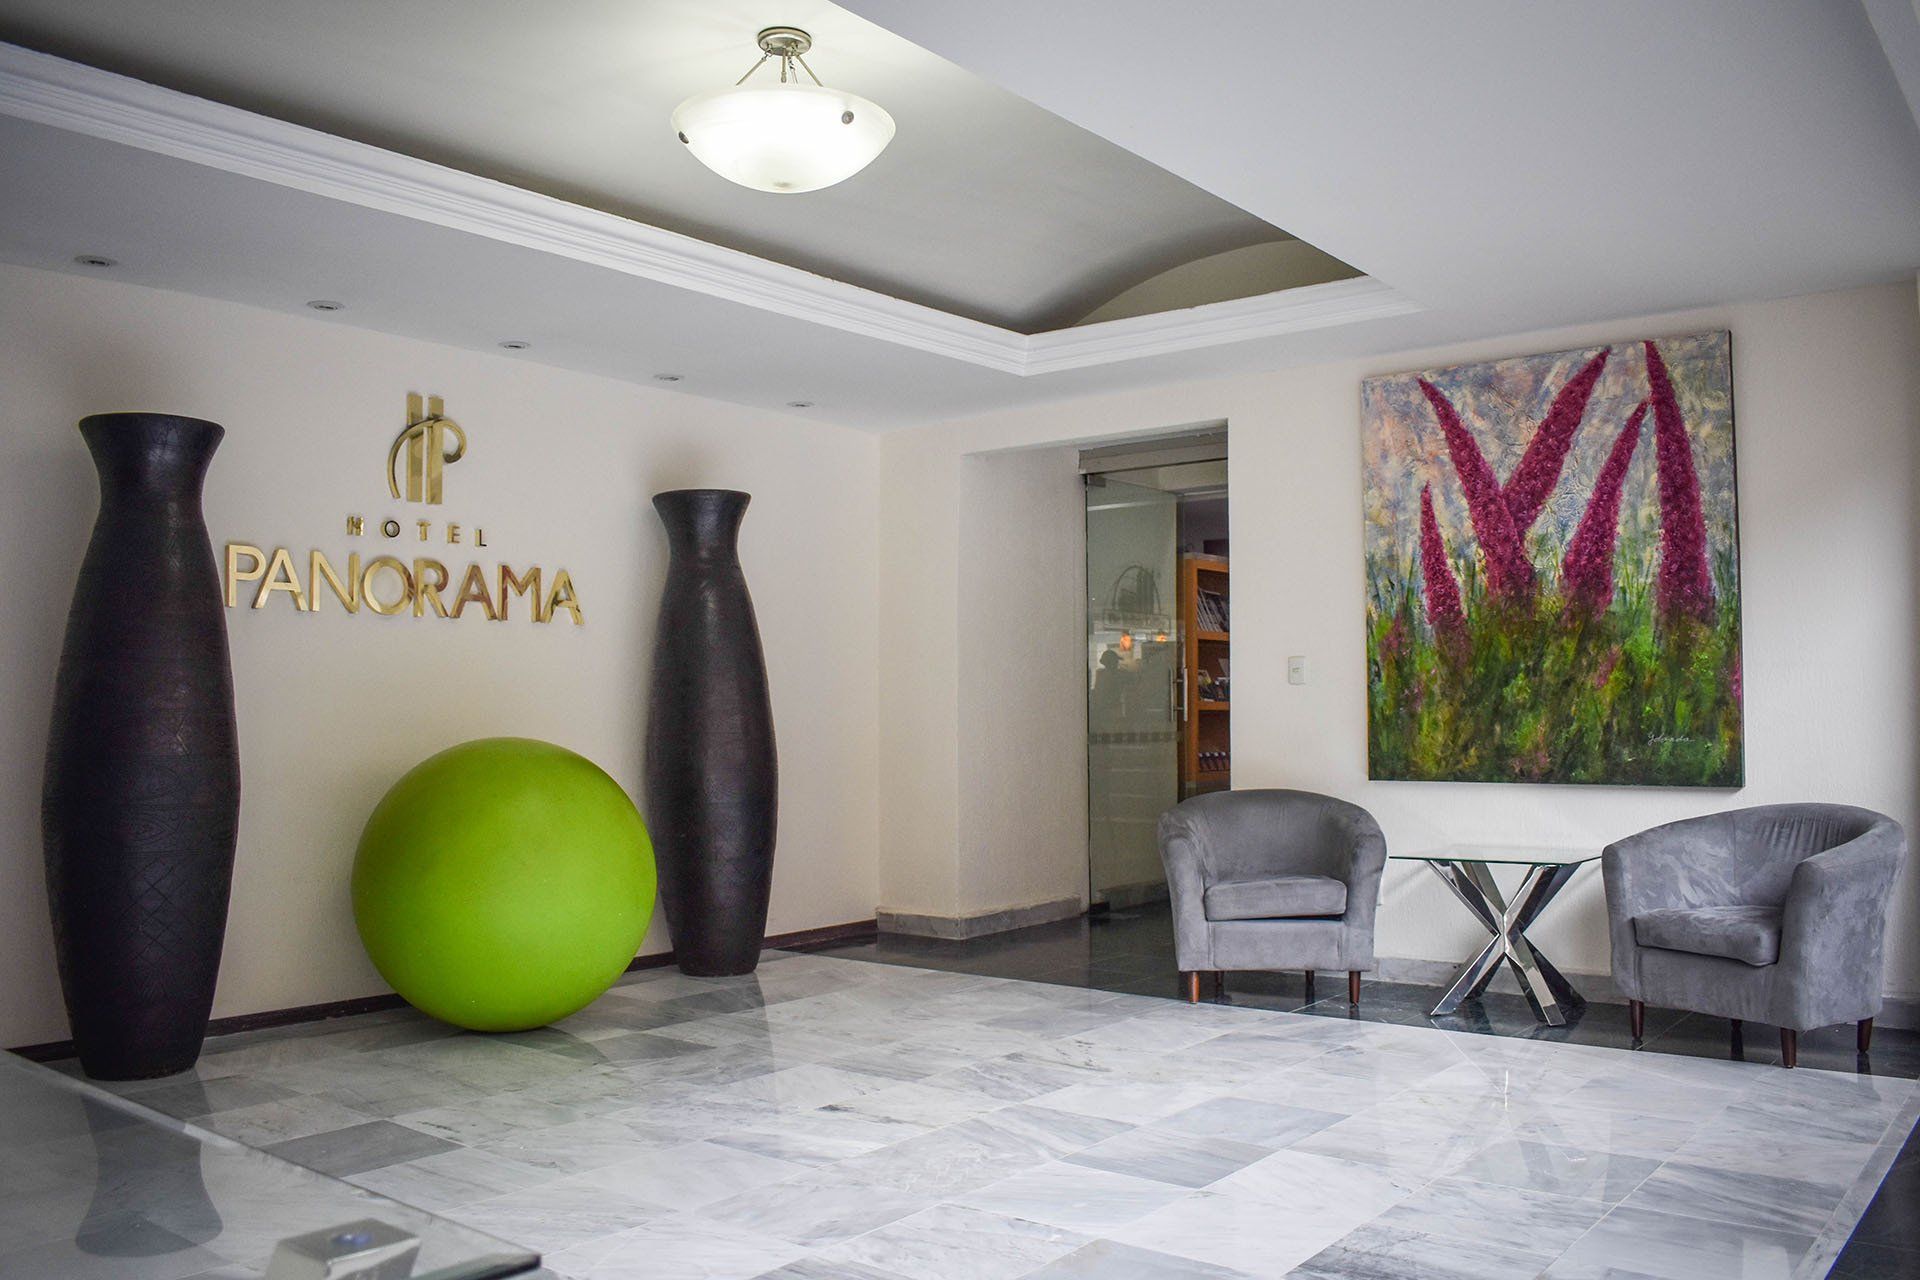 (c) Hotelpanorama.com.mx